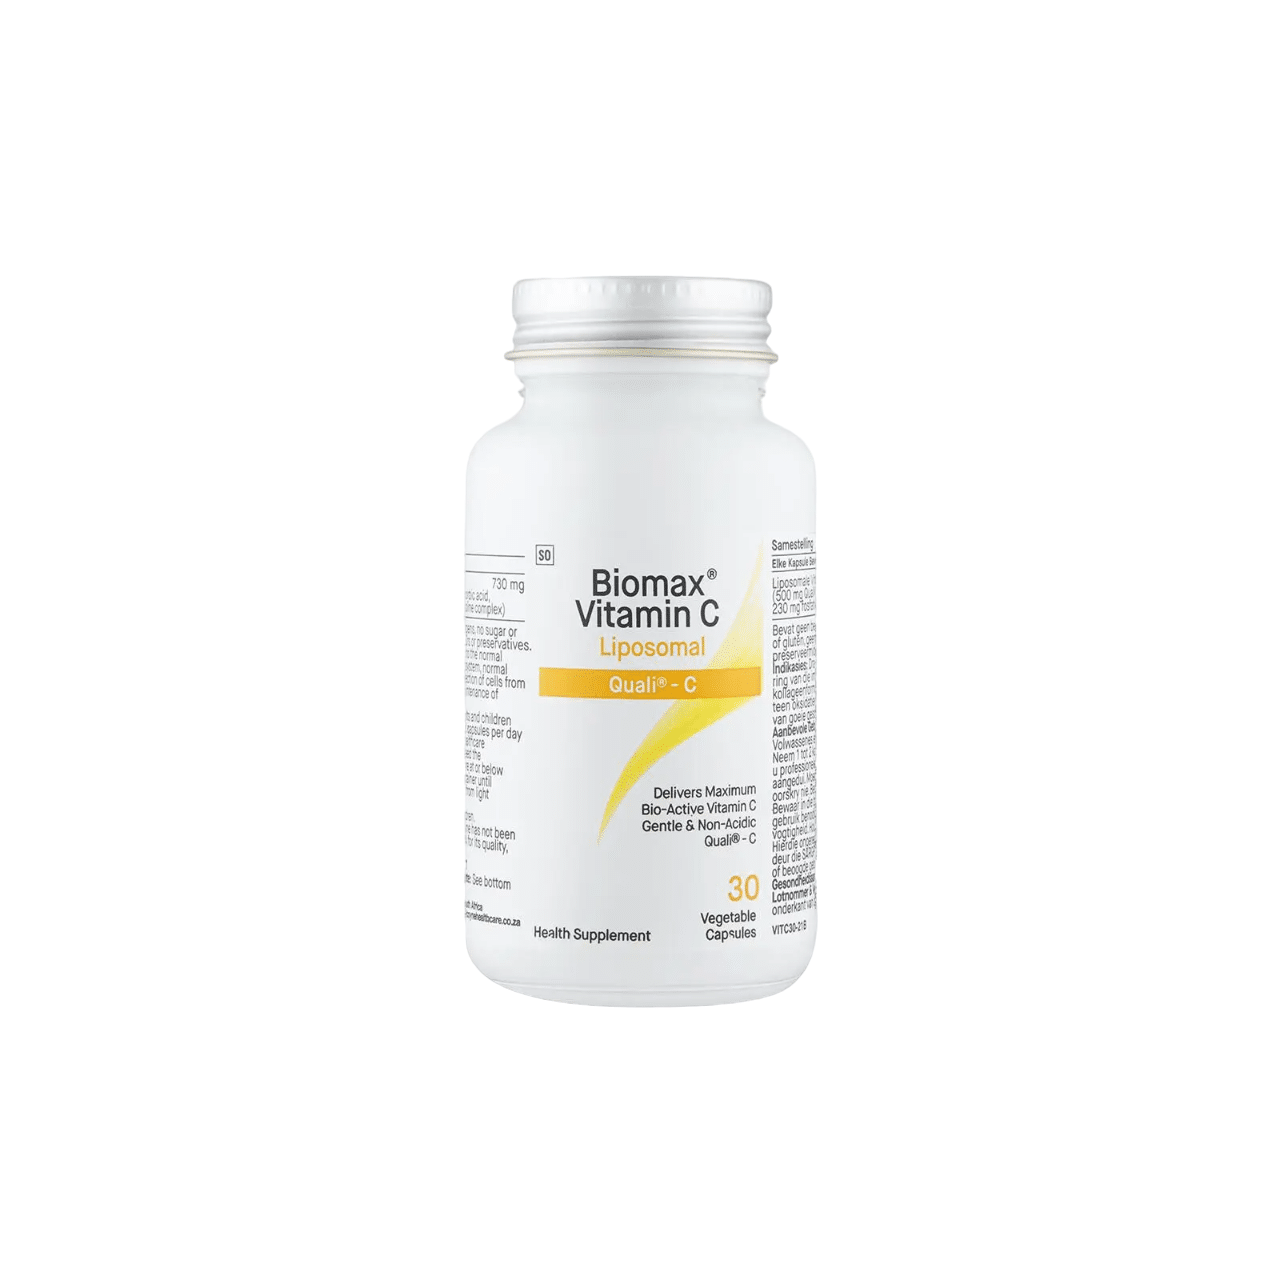 COYNE - Biomax® Vitamin C Liposomal 60's